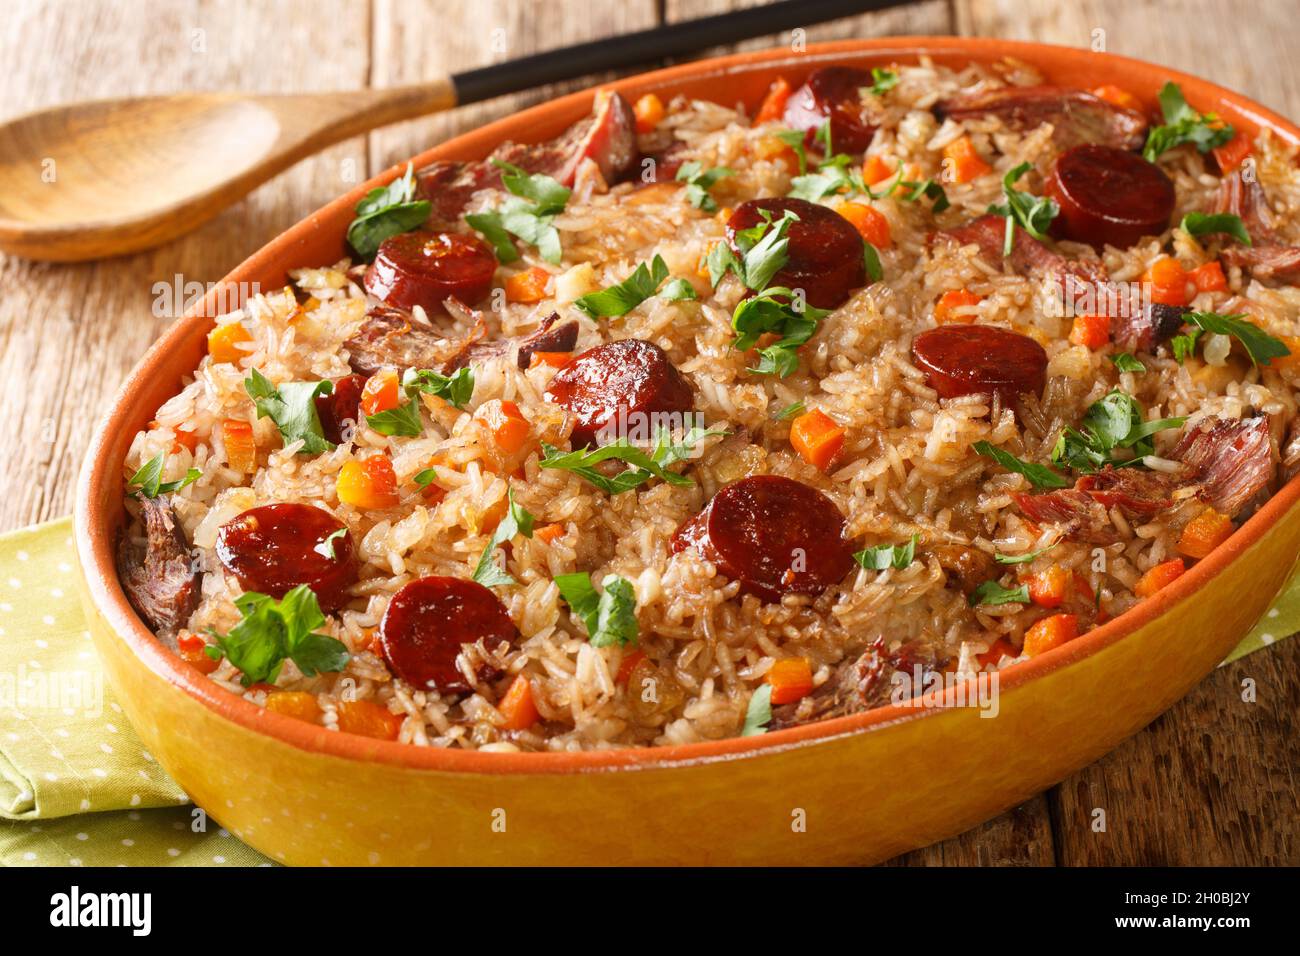 Riz au canard portugais arroz de pato cuit avec du vin rouge, de l'oignon, de la carotte et du chorizo gros plan dans le plat de cuisson sur la table en bois.Horizontale Banque D'Images